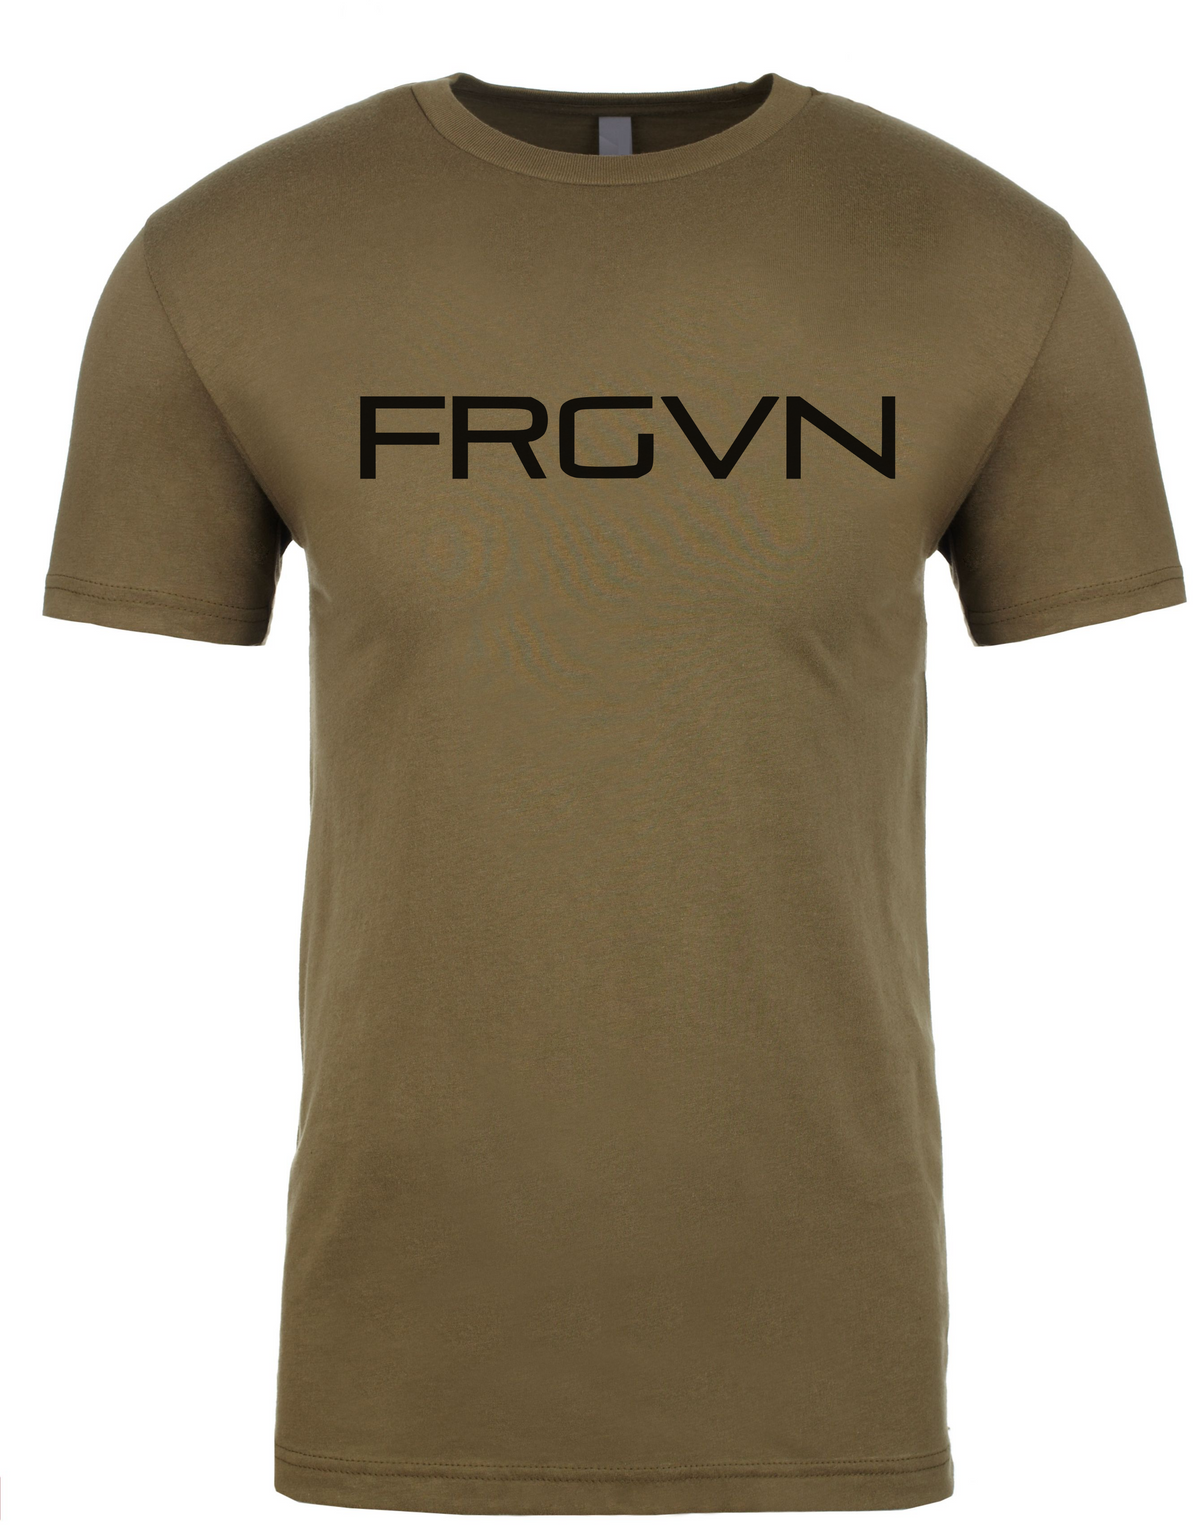 FRGVN T-Shirt - Adult